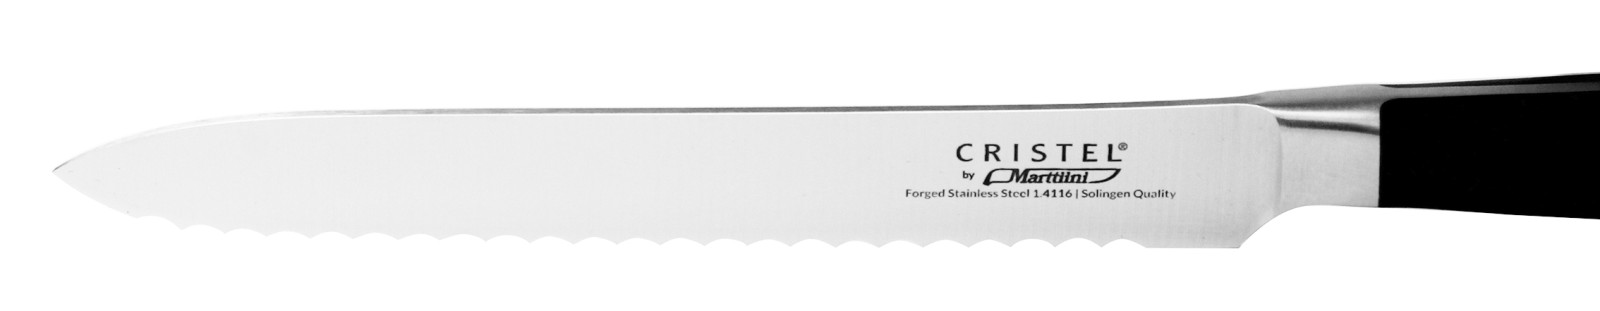 Couteau universel à dents - Couteaux CRISTEL by Marttiini, Couteaux -  Cristel